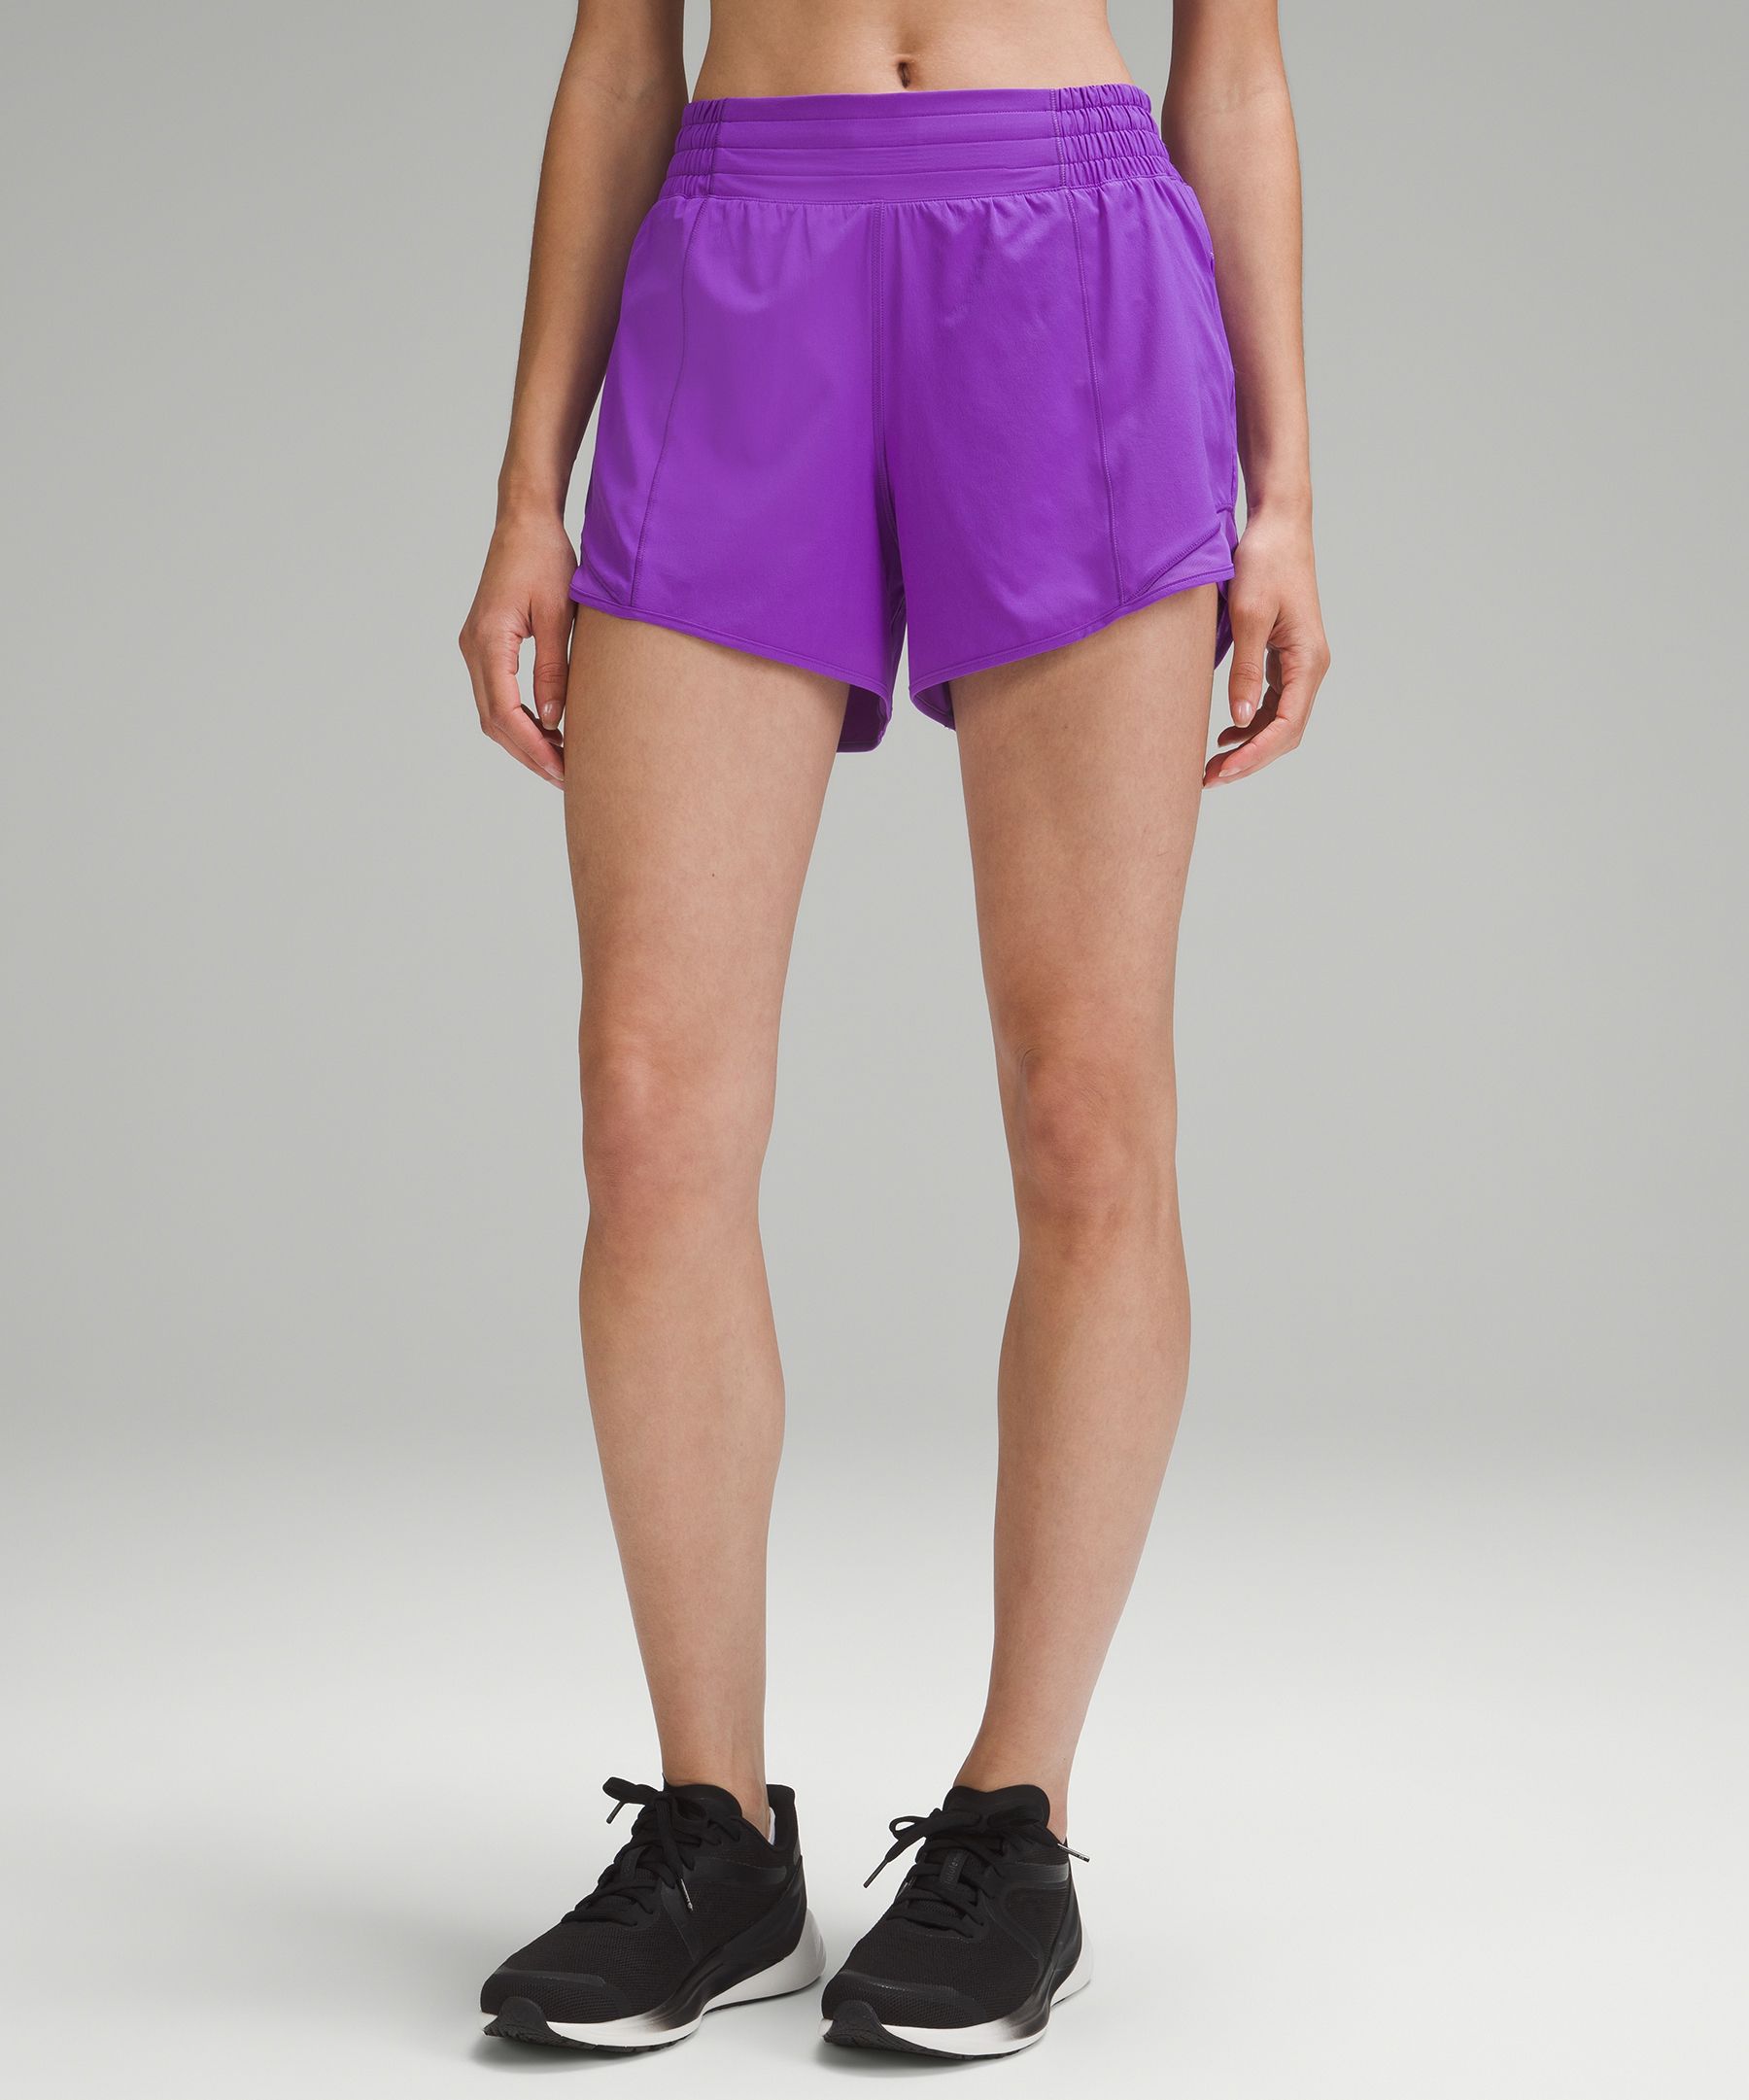 Lululemon Hotty Hot High-rise Lined Shorts 4"